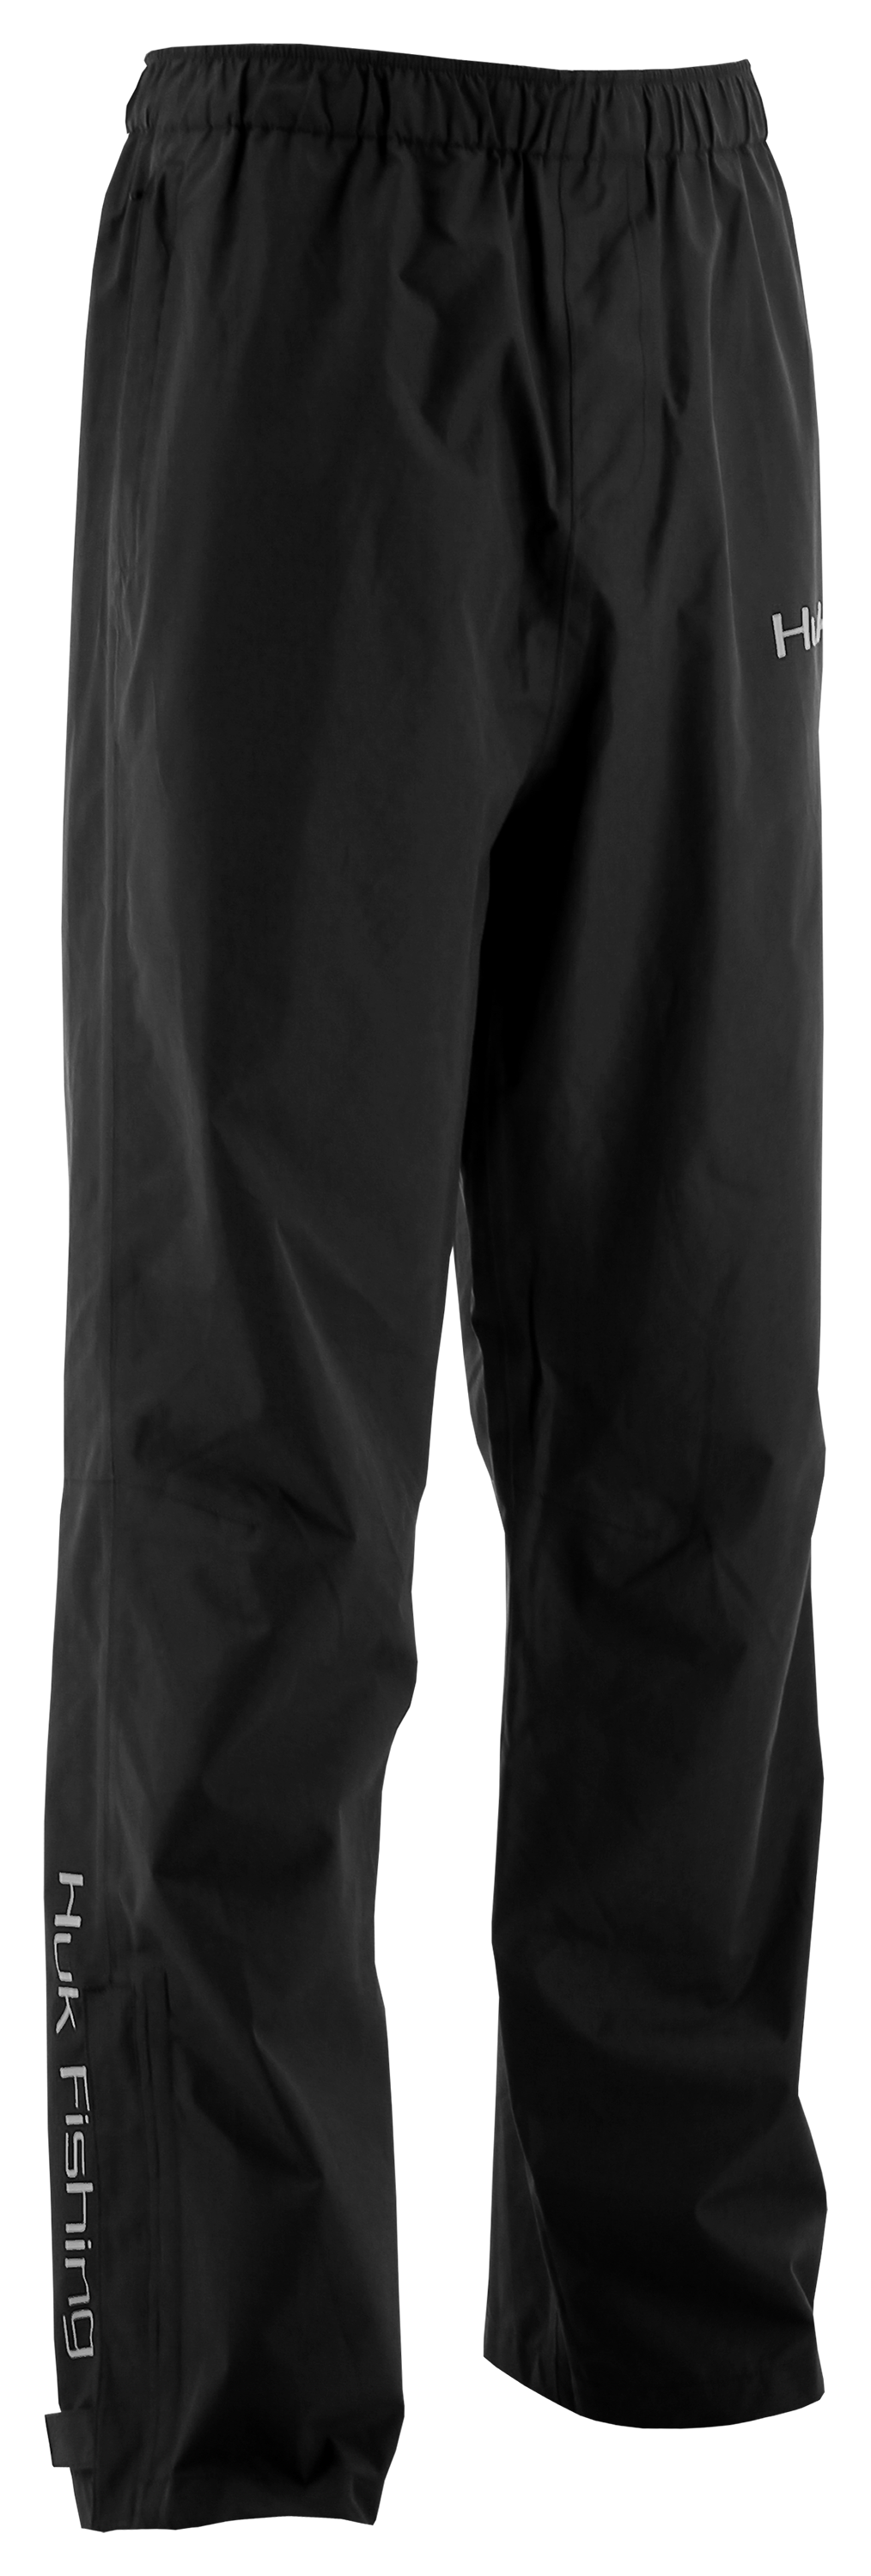 Huk Packable Rain Pants for Men